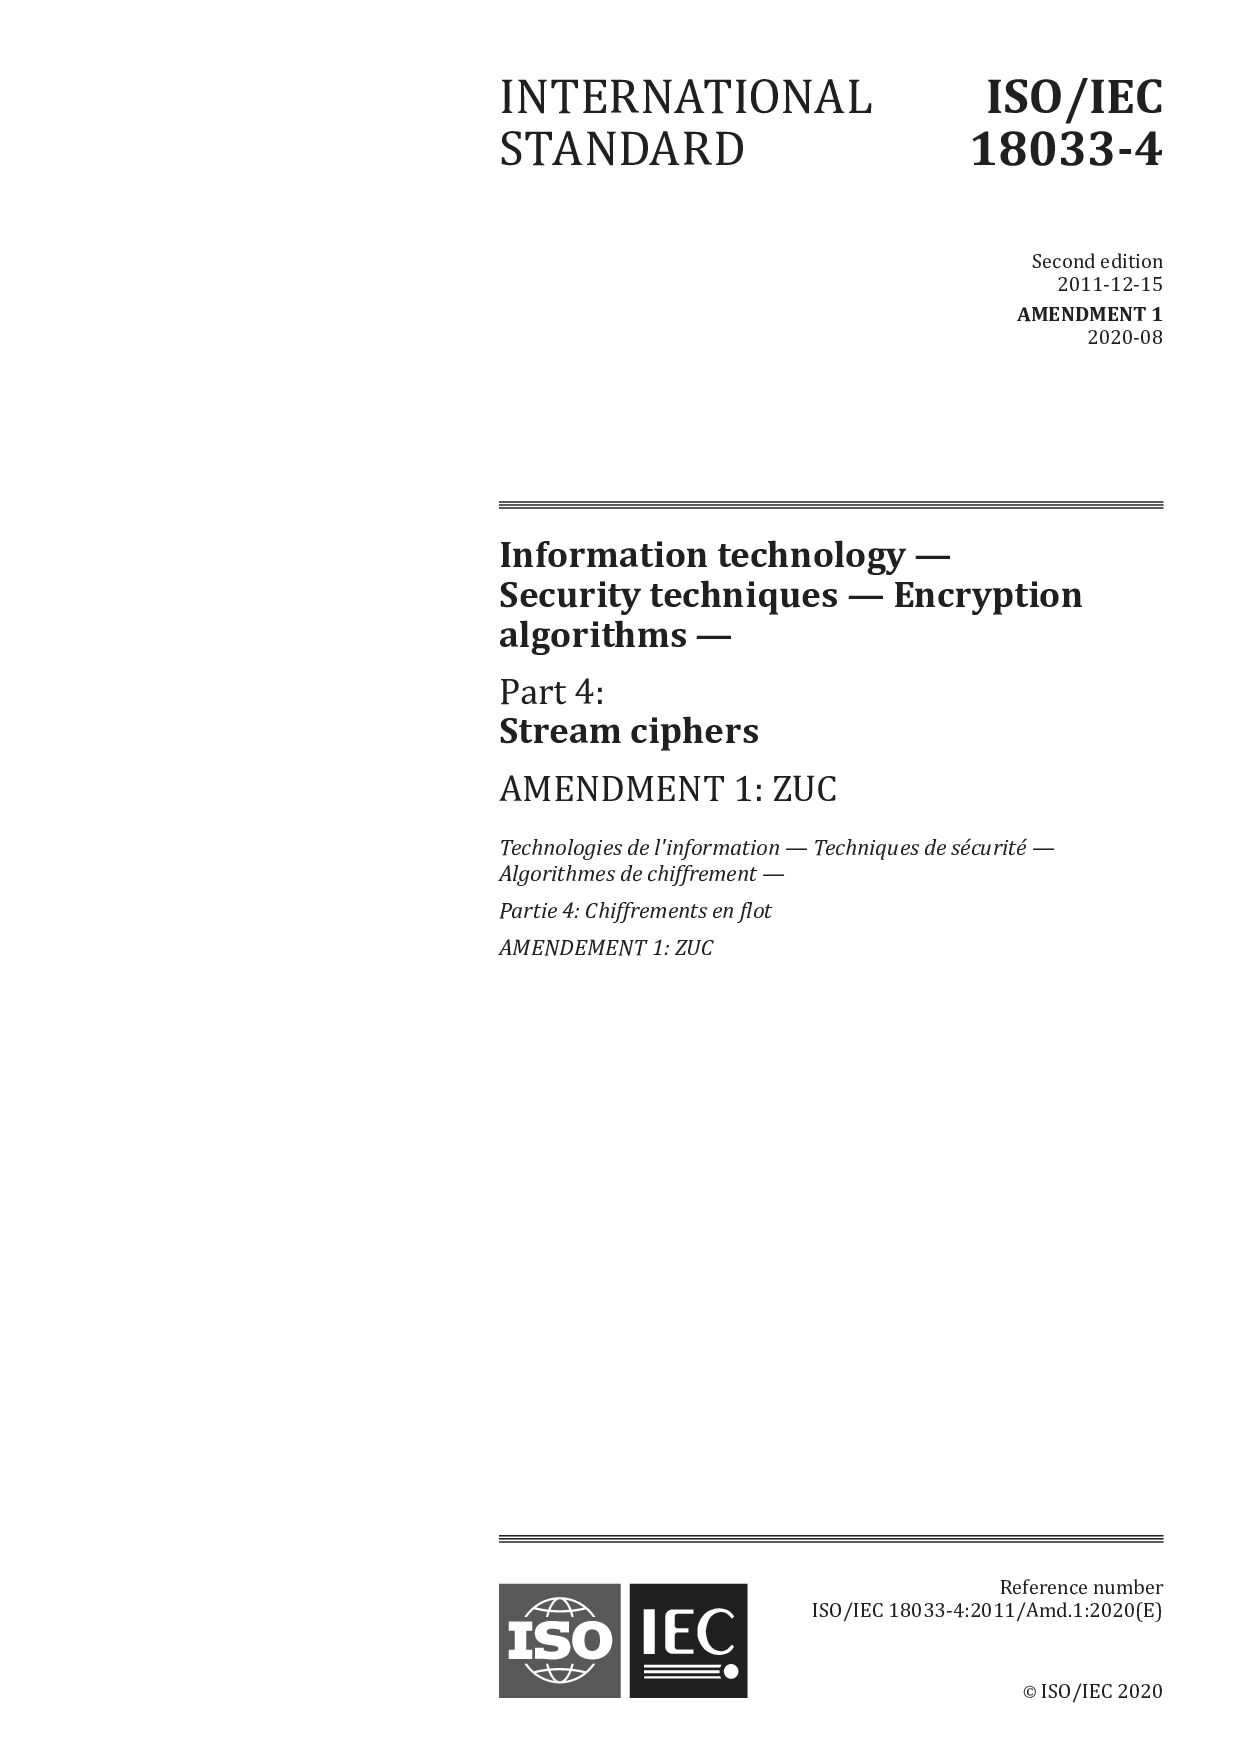 ISO/IEC 18033-4:2011/Amd 1:2020封面图